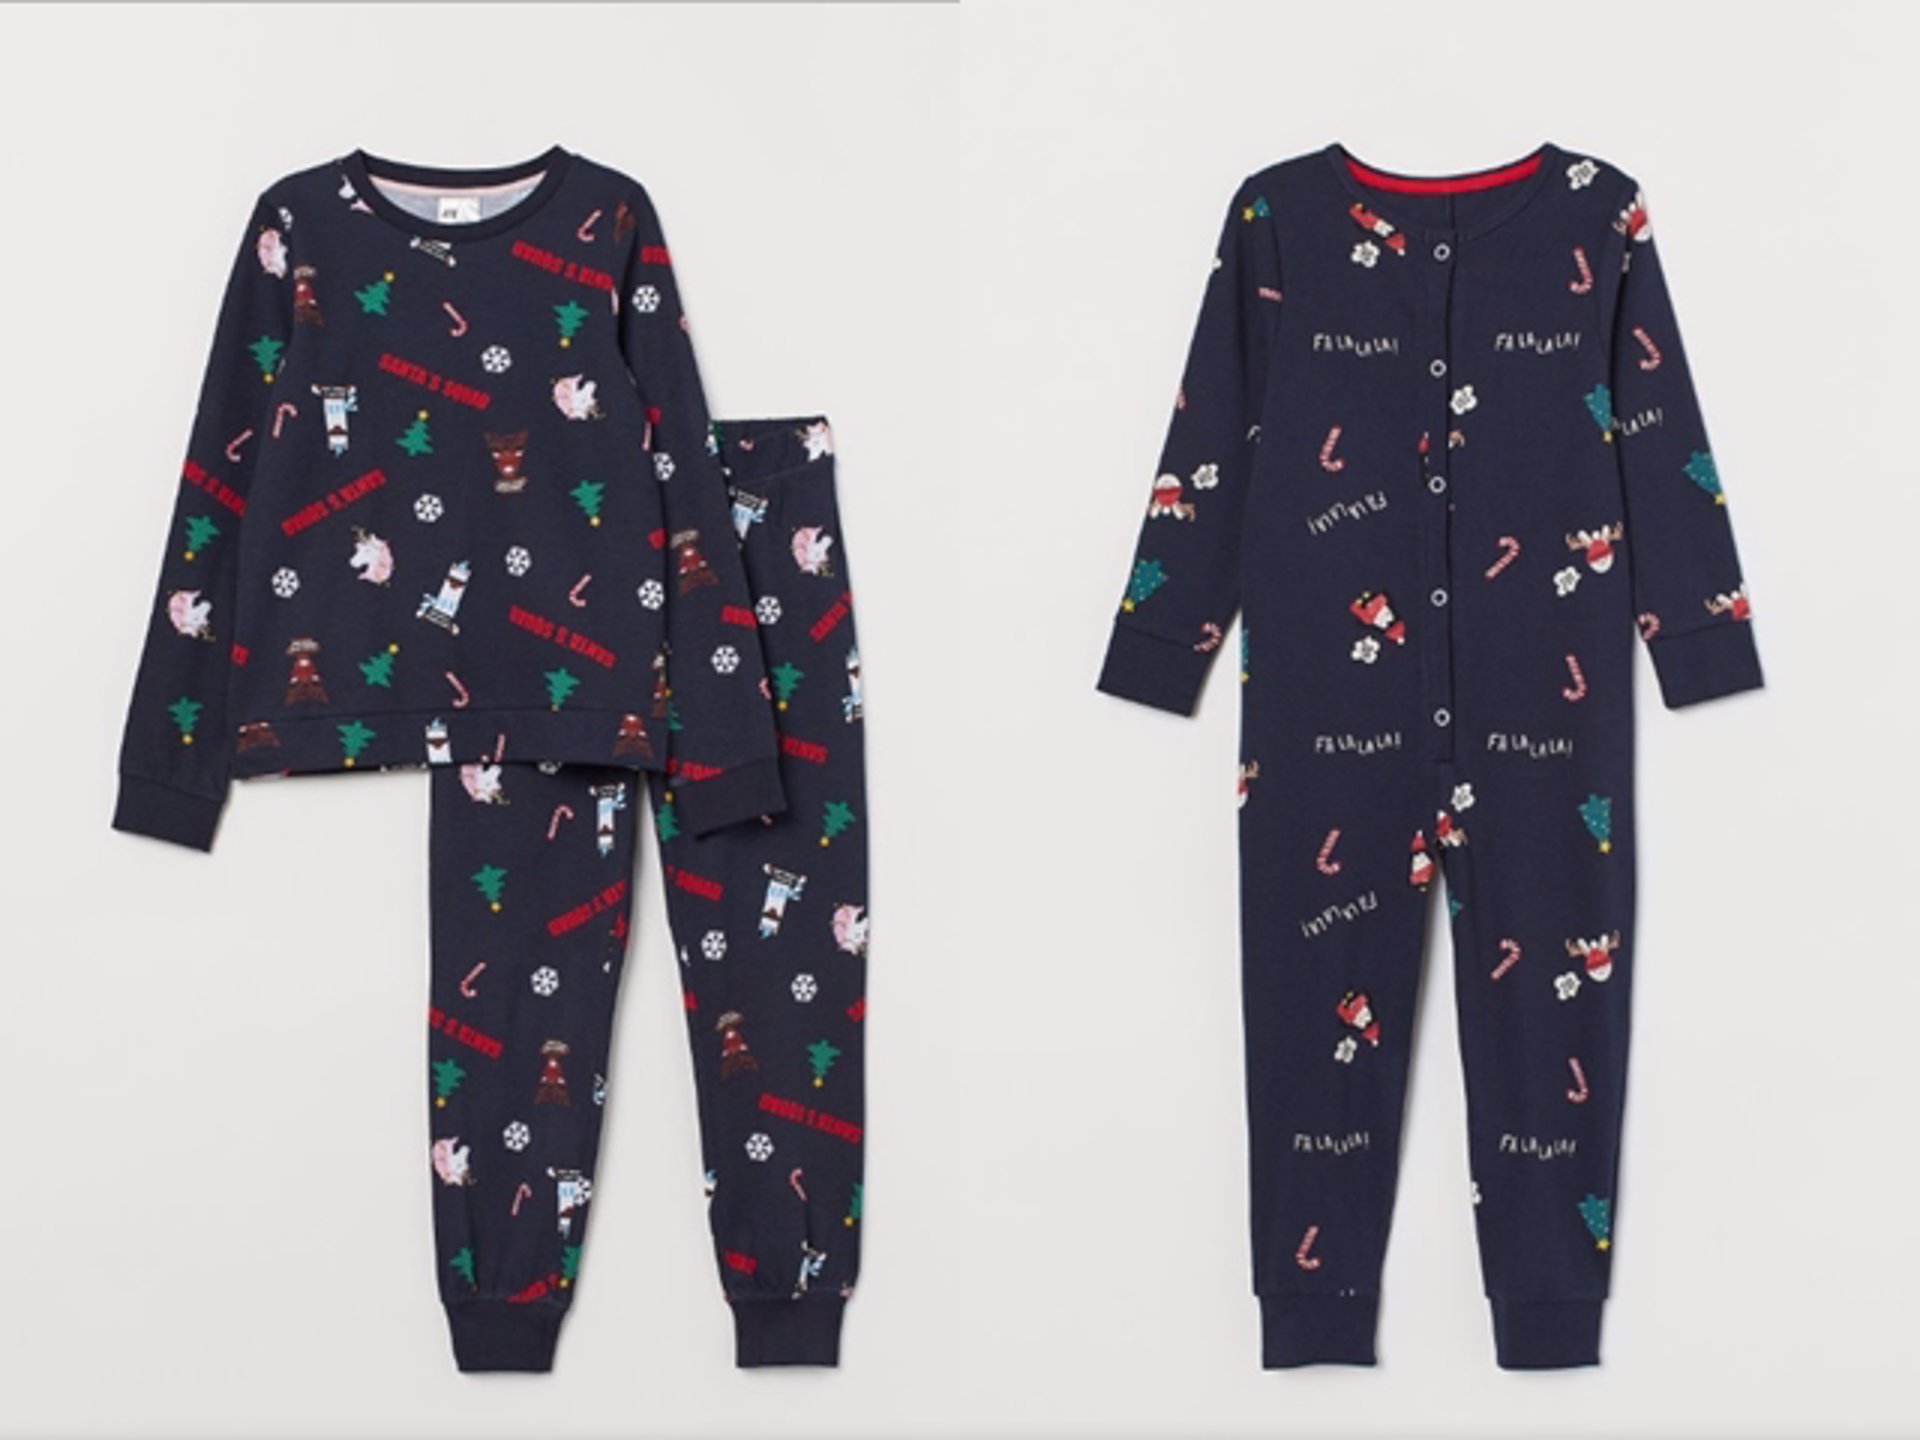 Un fiel Paseo Gran engaño Calendario de Adviento: descubre los pijamas navideños más calentitos de  esta temporada